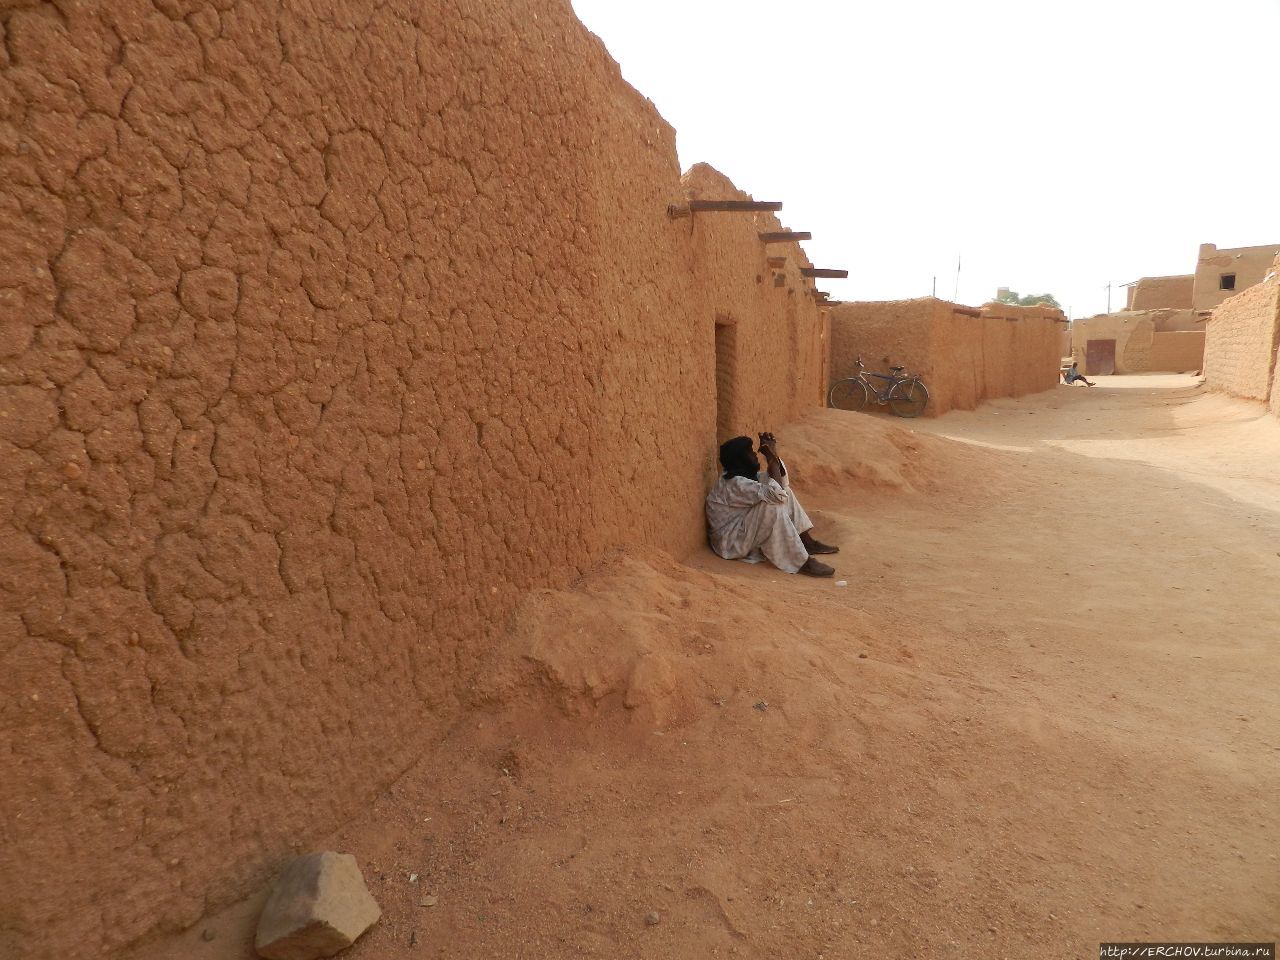 Нигер. Ч — 16. Старый город Агадес, Нигер